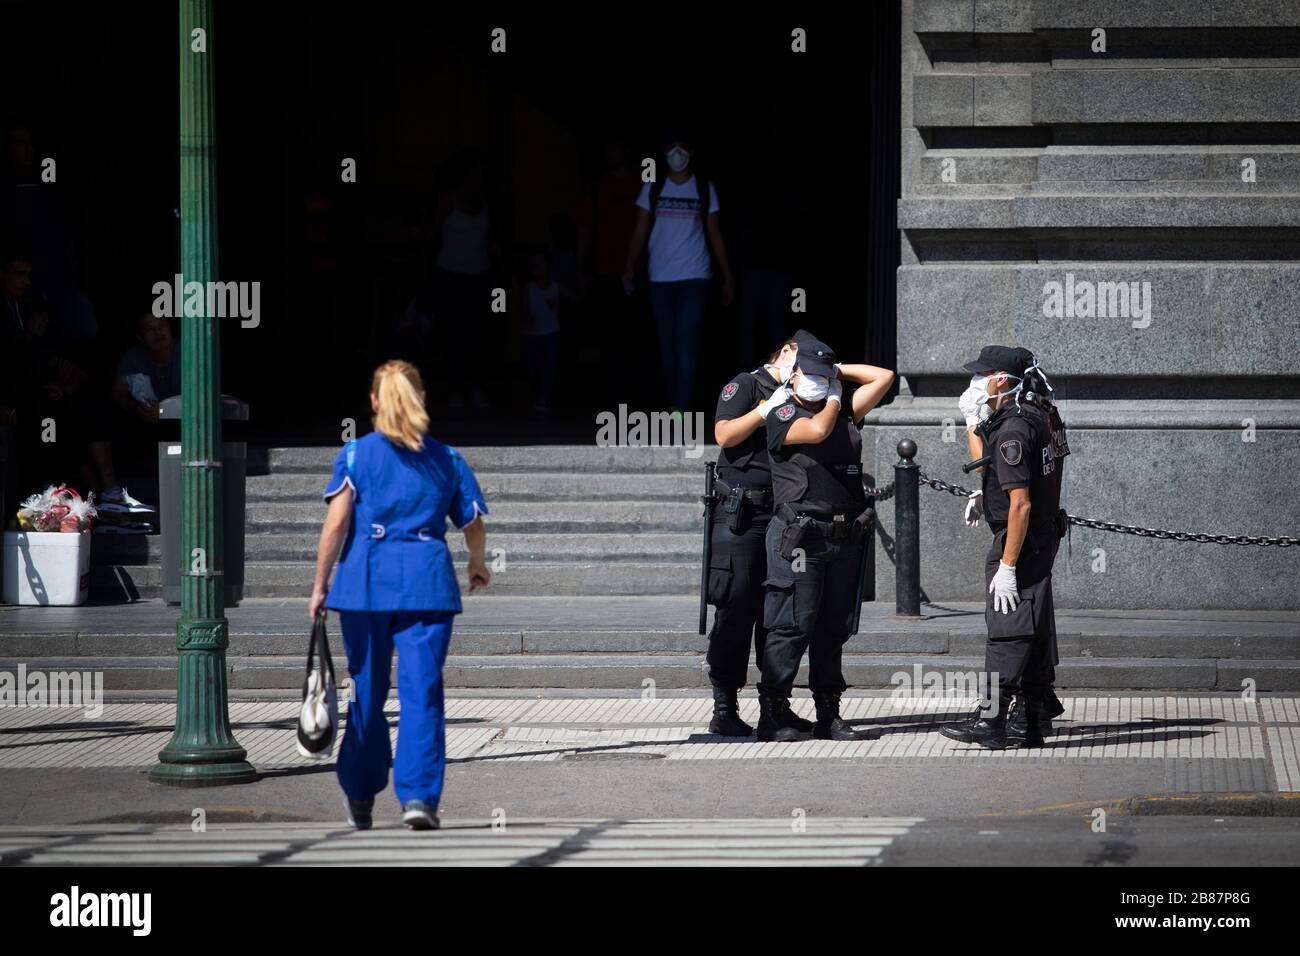 Buenos Aires, Argentinien - 20. März 2020: Die Polizei stellt die Kinnschutzmasken am Tag nach dem Ausnahmezustand in Buenos Aires, Argentin Stockfoto